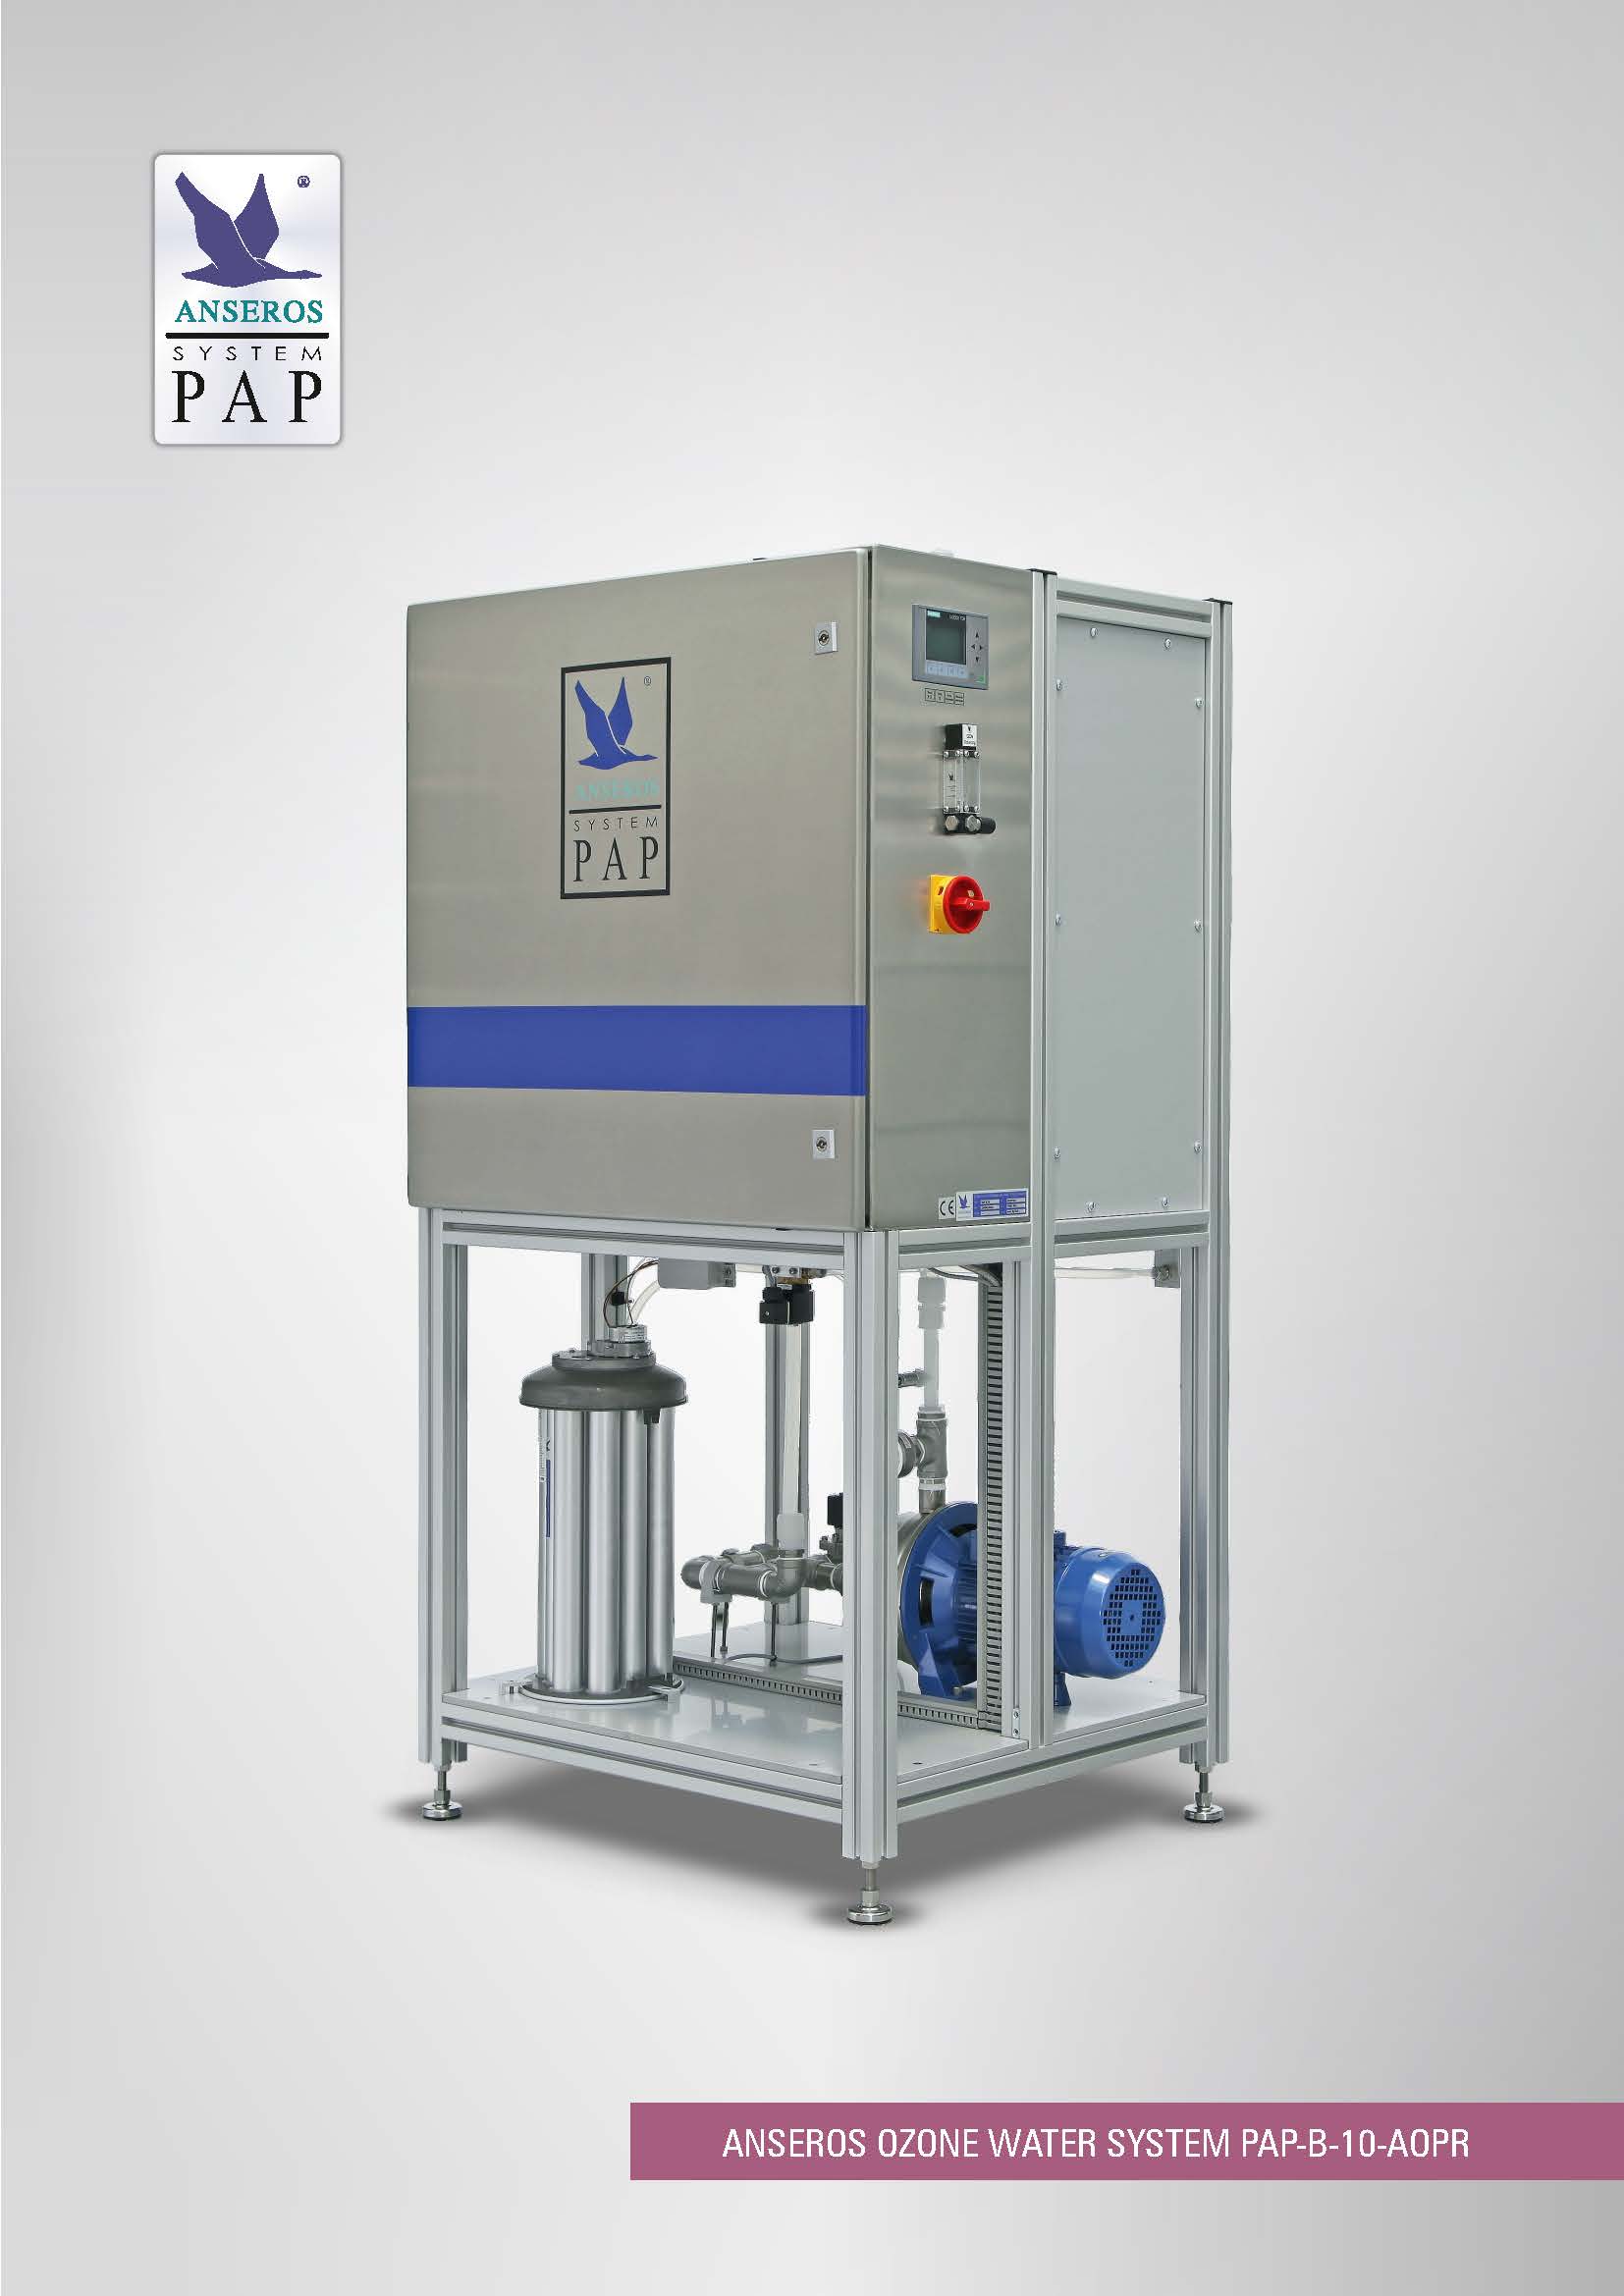 Sistema de agua ozonizada ANSEROS PAP-B